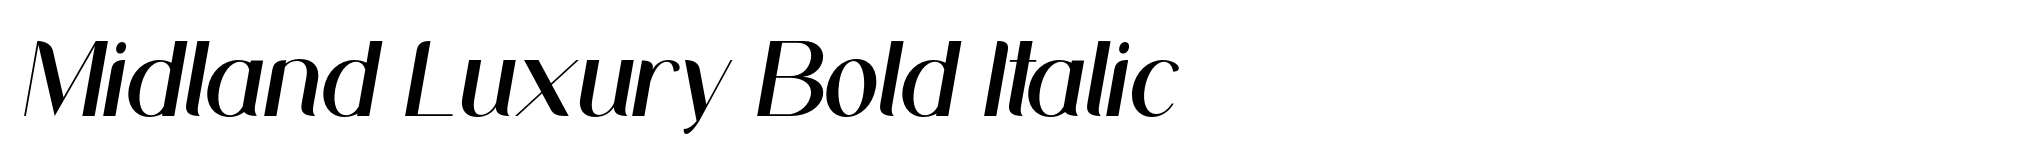 Midland Luxury Bold Italic image